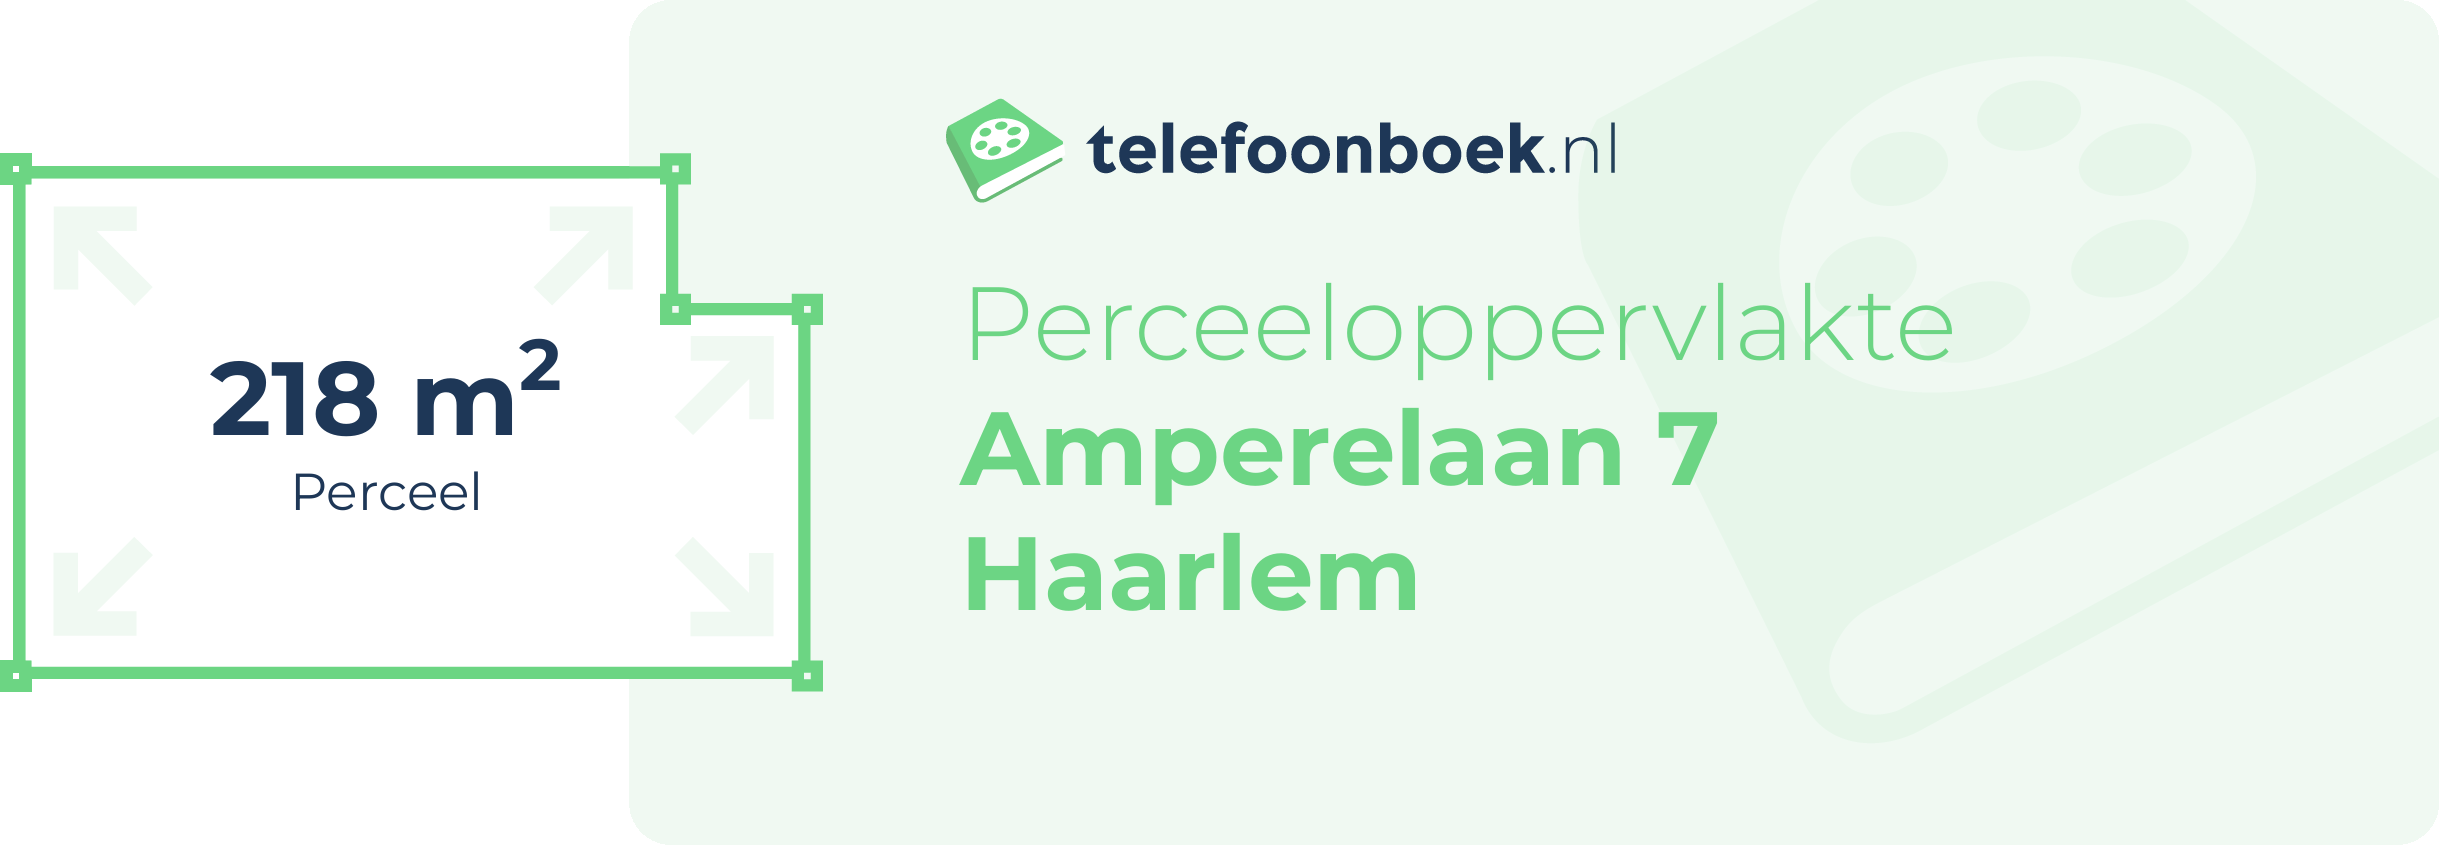 Perceeloppervlakte Amperelaan 7 Haarlem